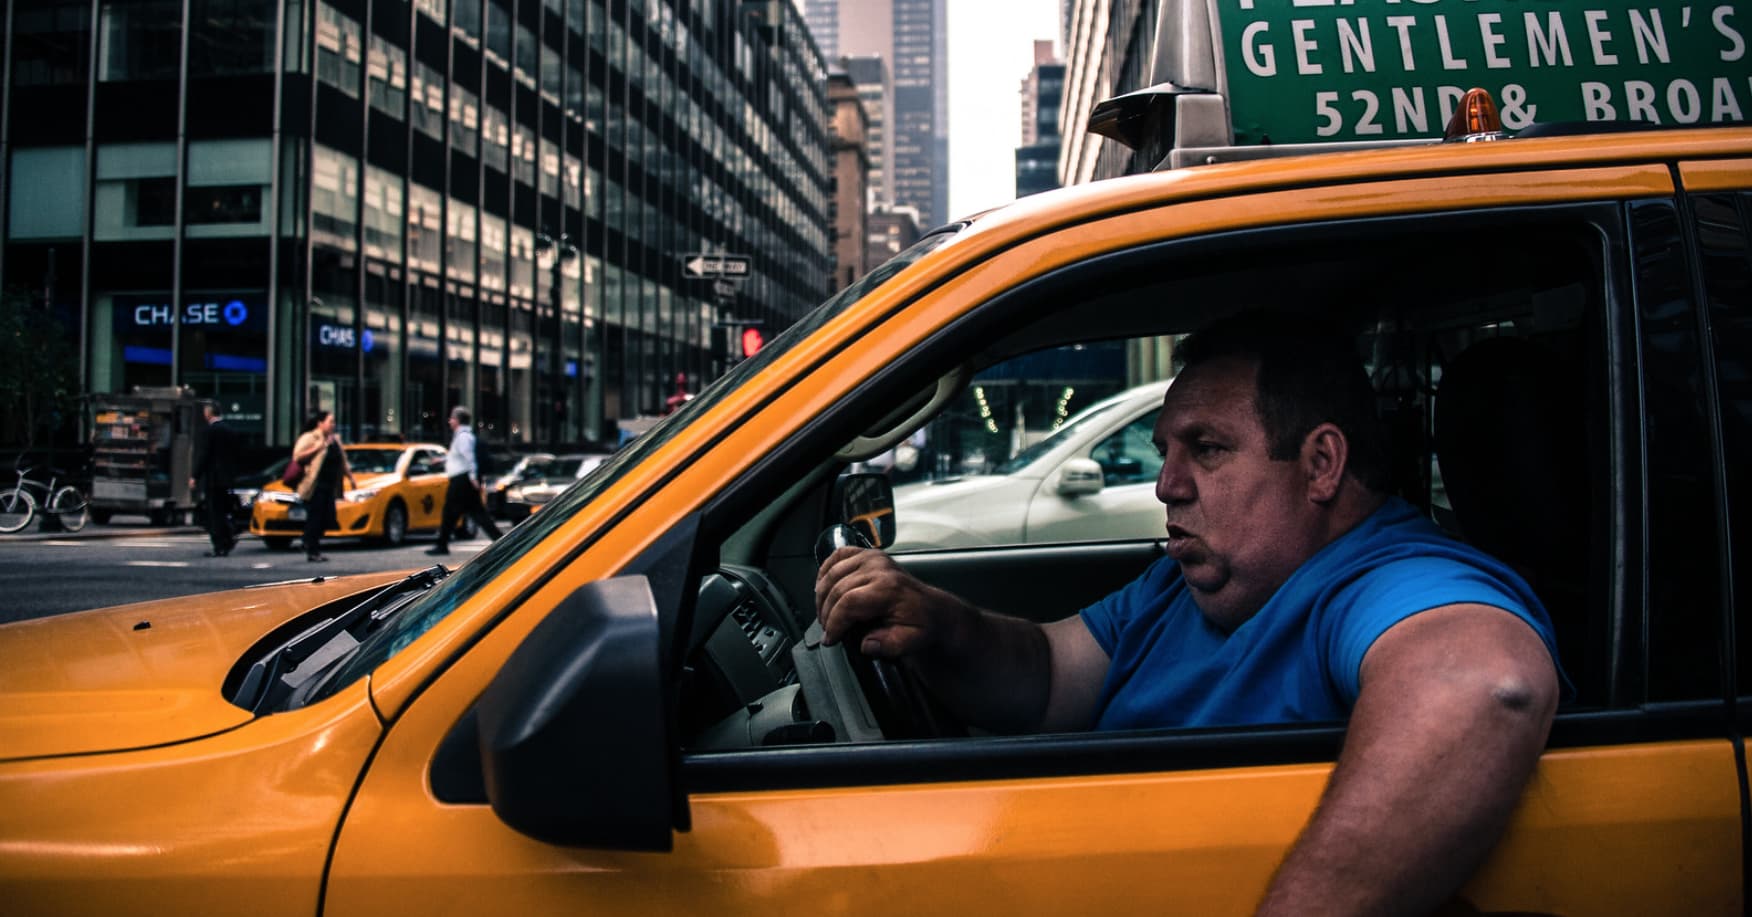 Аналитика водителей такси